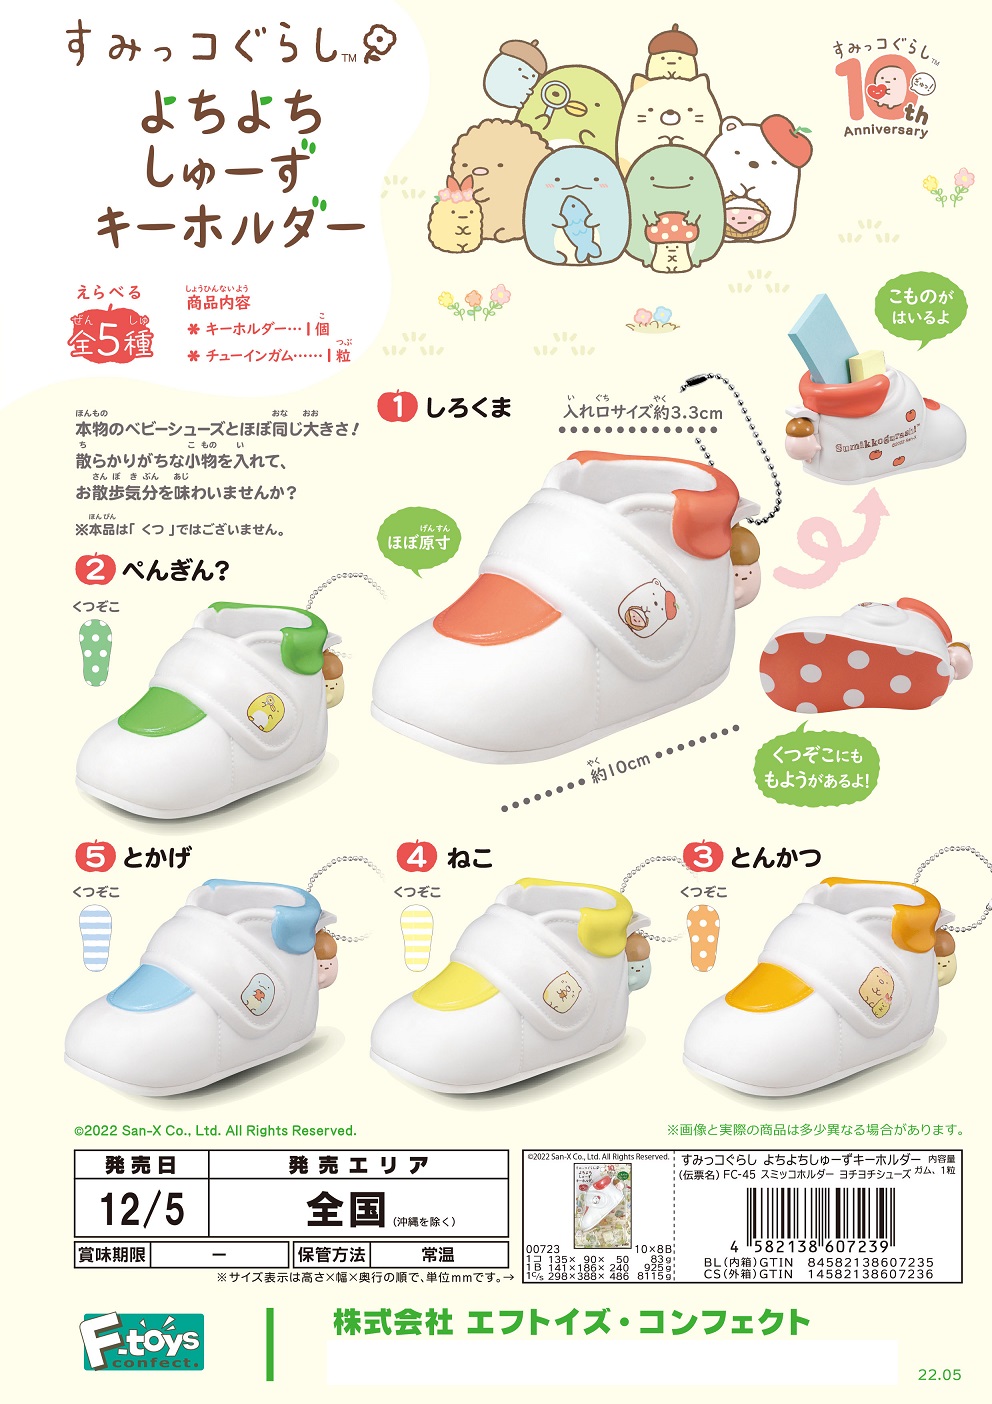 【B】食玩 盲盒 角落生物系列 婴儿鞋挂件 全5种 (1盒10个) 607239